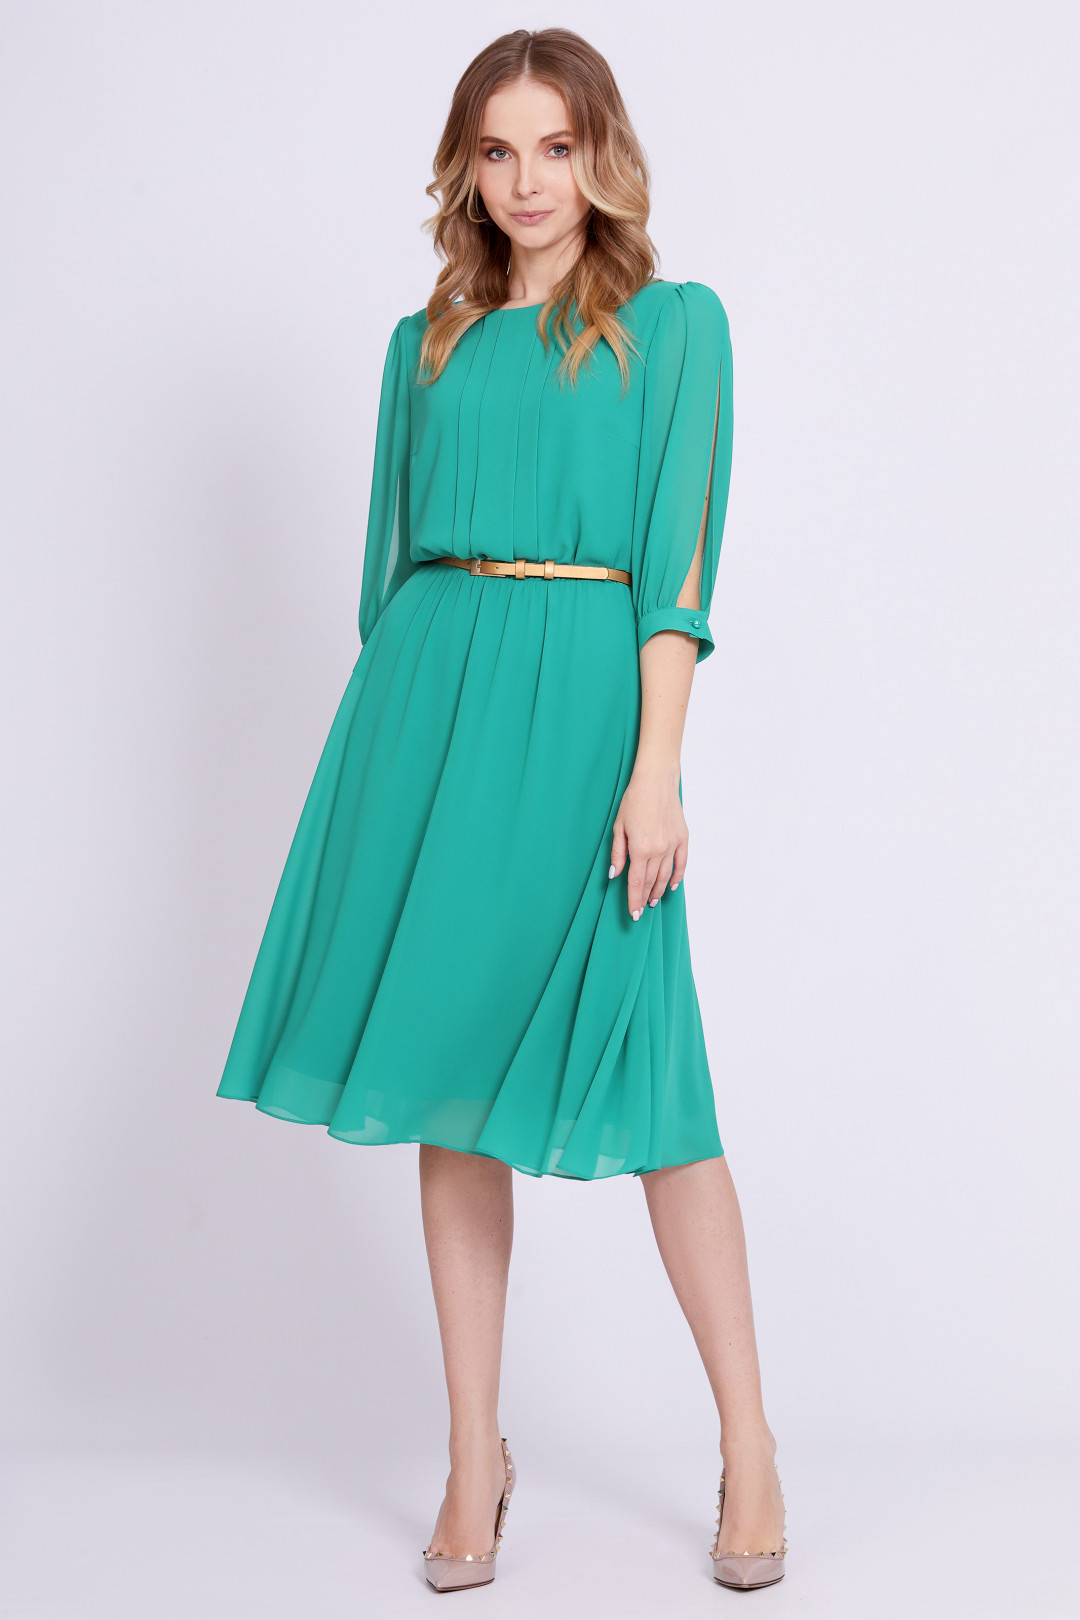 Платье Bazalini 4741 зеленый